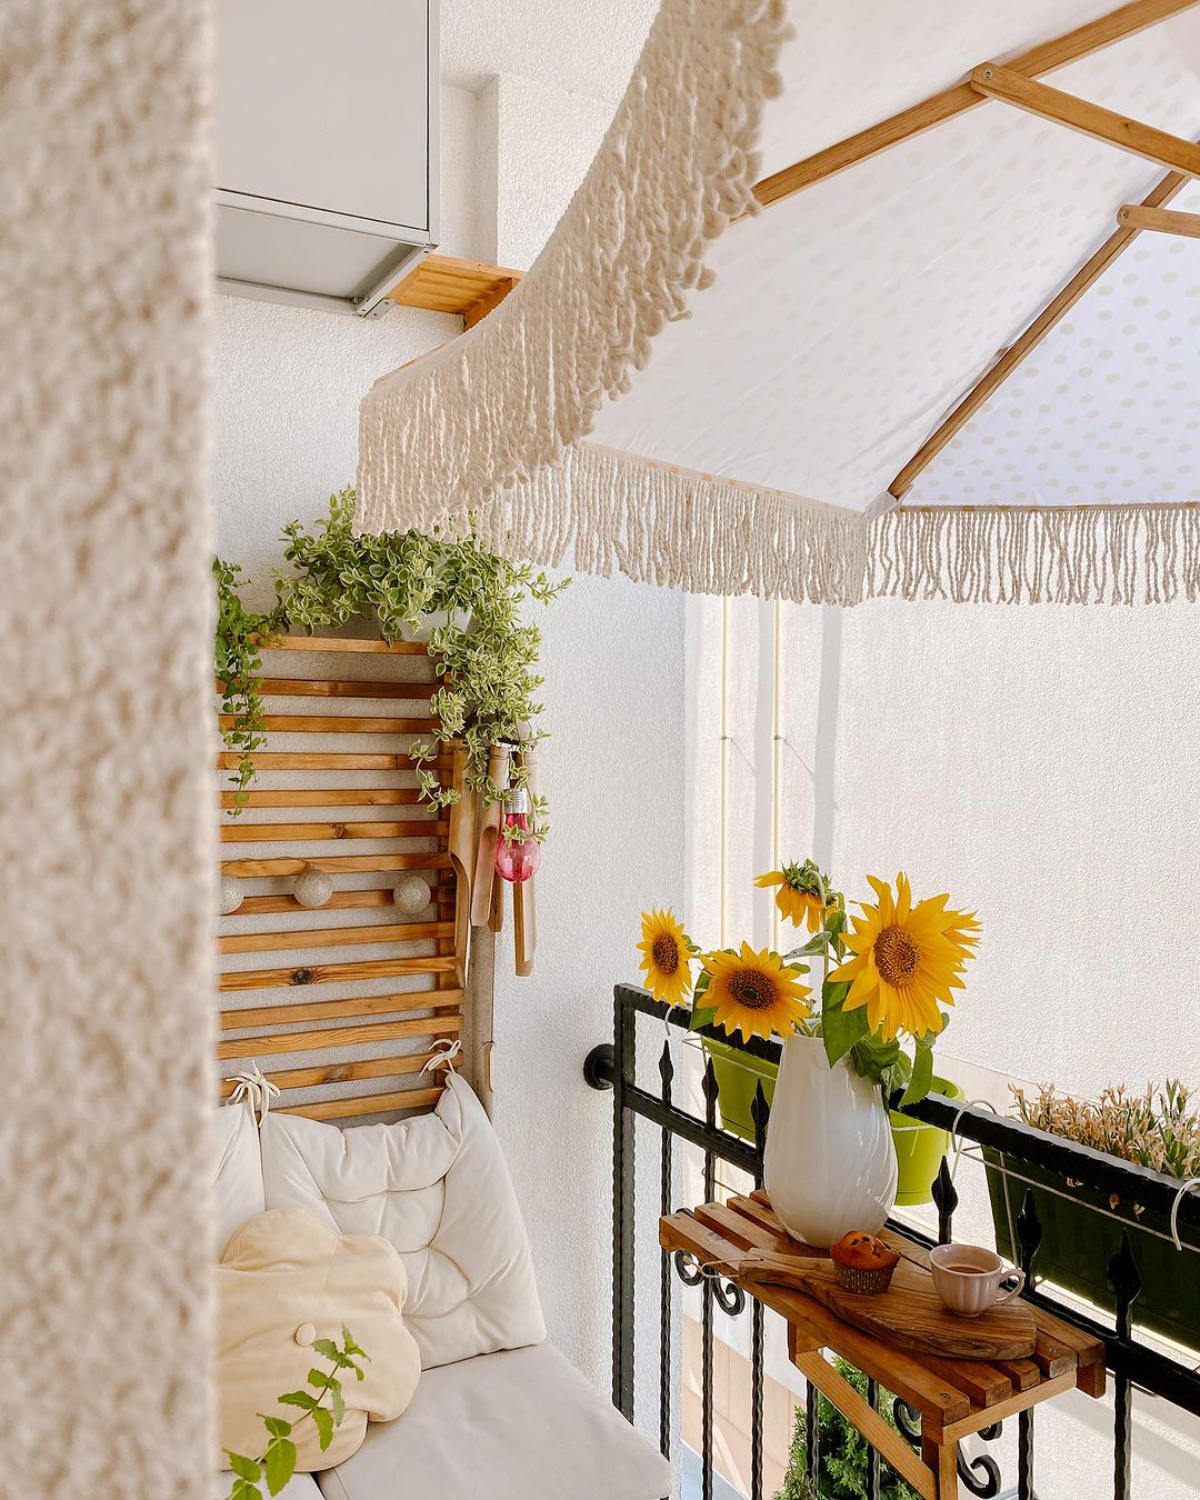 kleiner balkon lounge design mit sonnenblumen